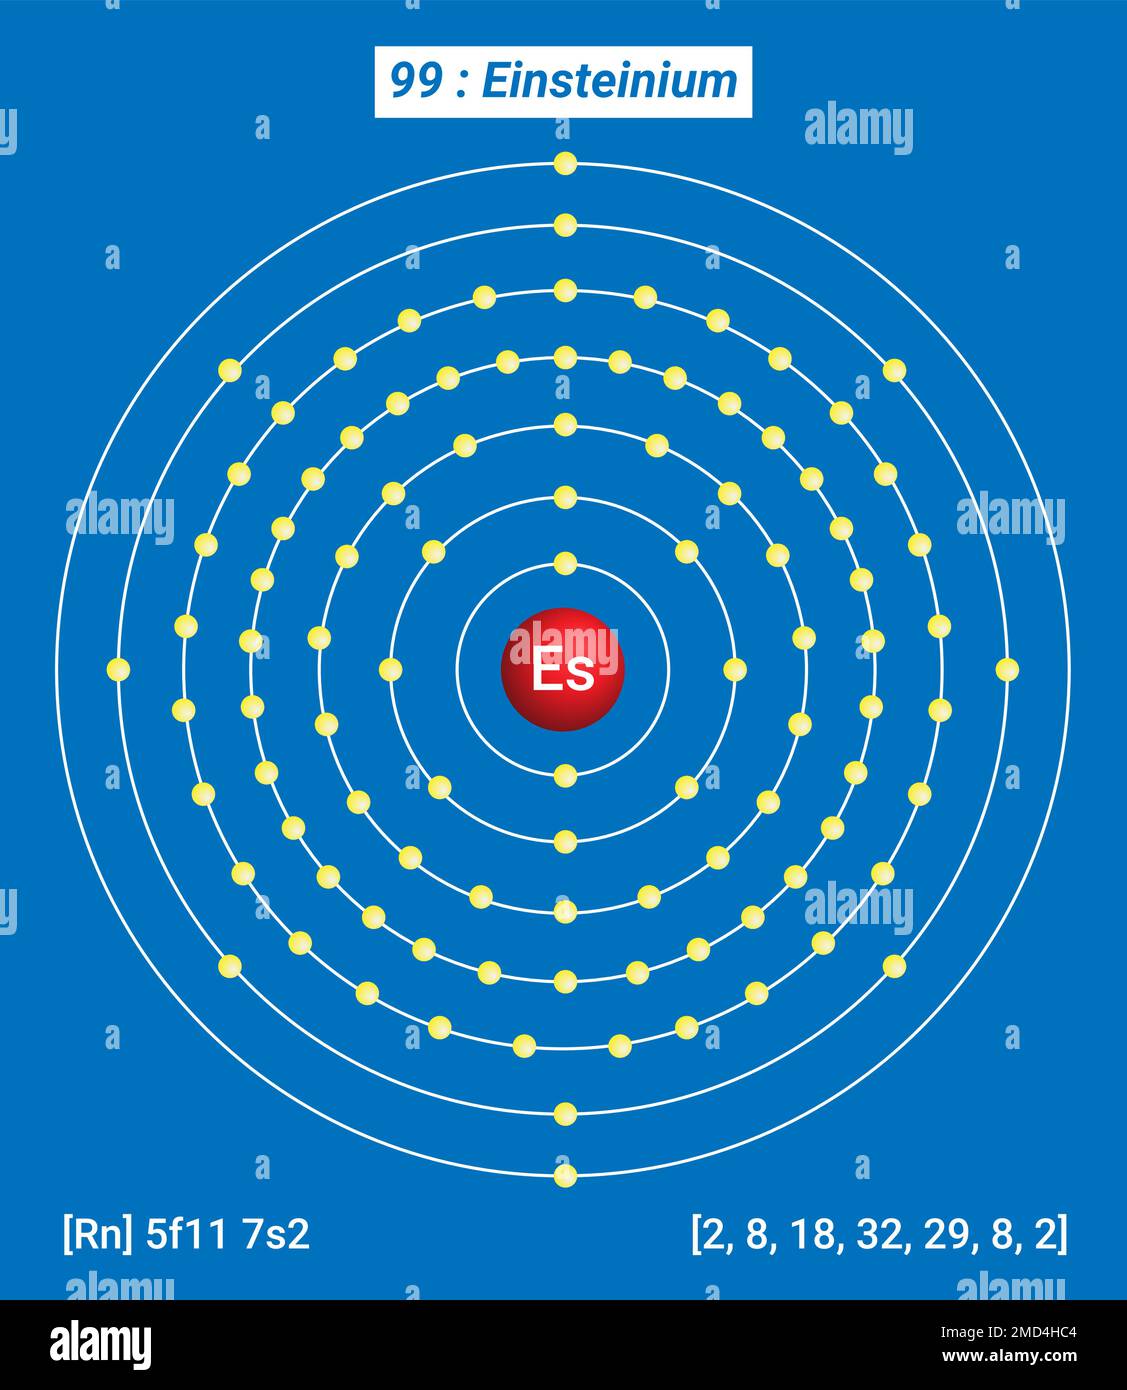 Es Einsteinium, Tavola periodica degli elementi, struttura shell di Einsteinium - elettroni per livello di energia Illustrazione Vettoriale